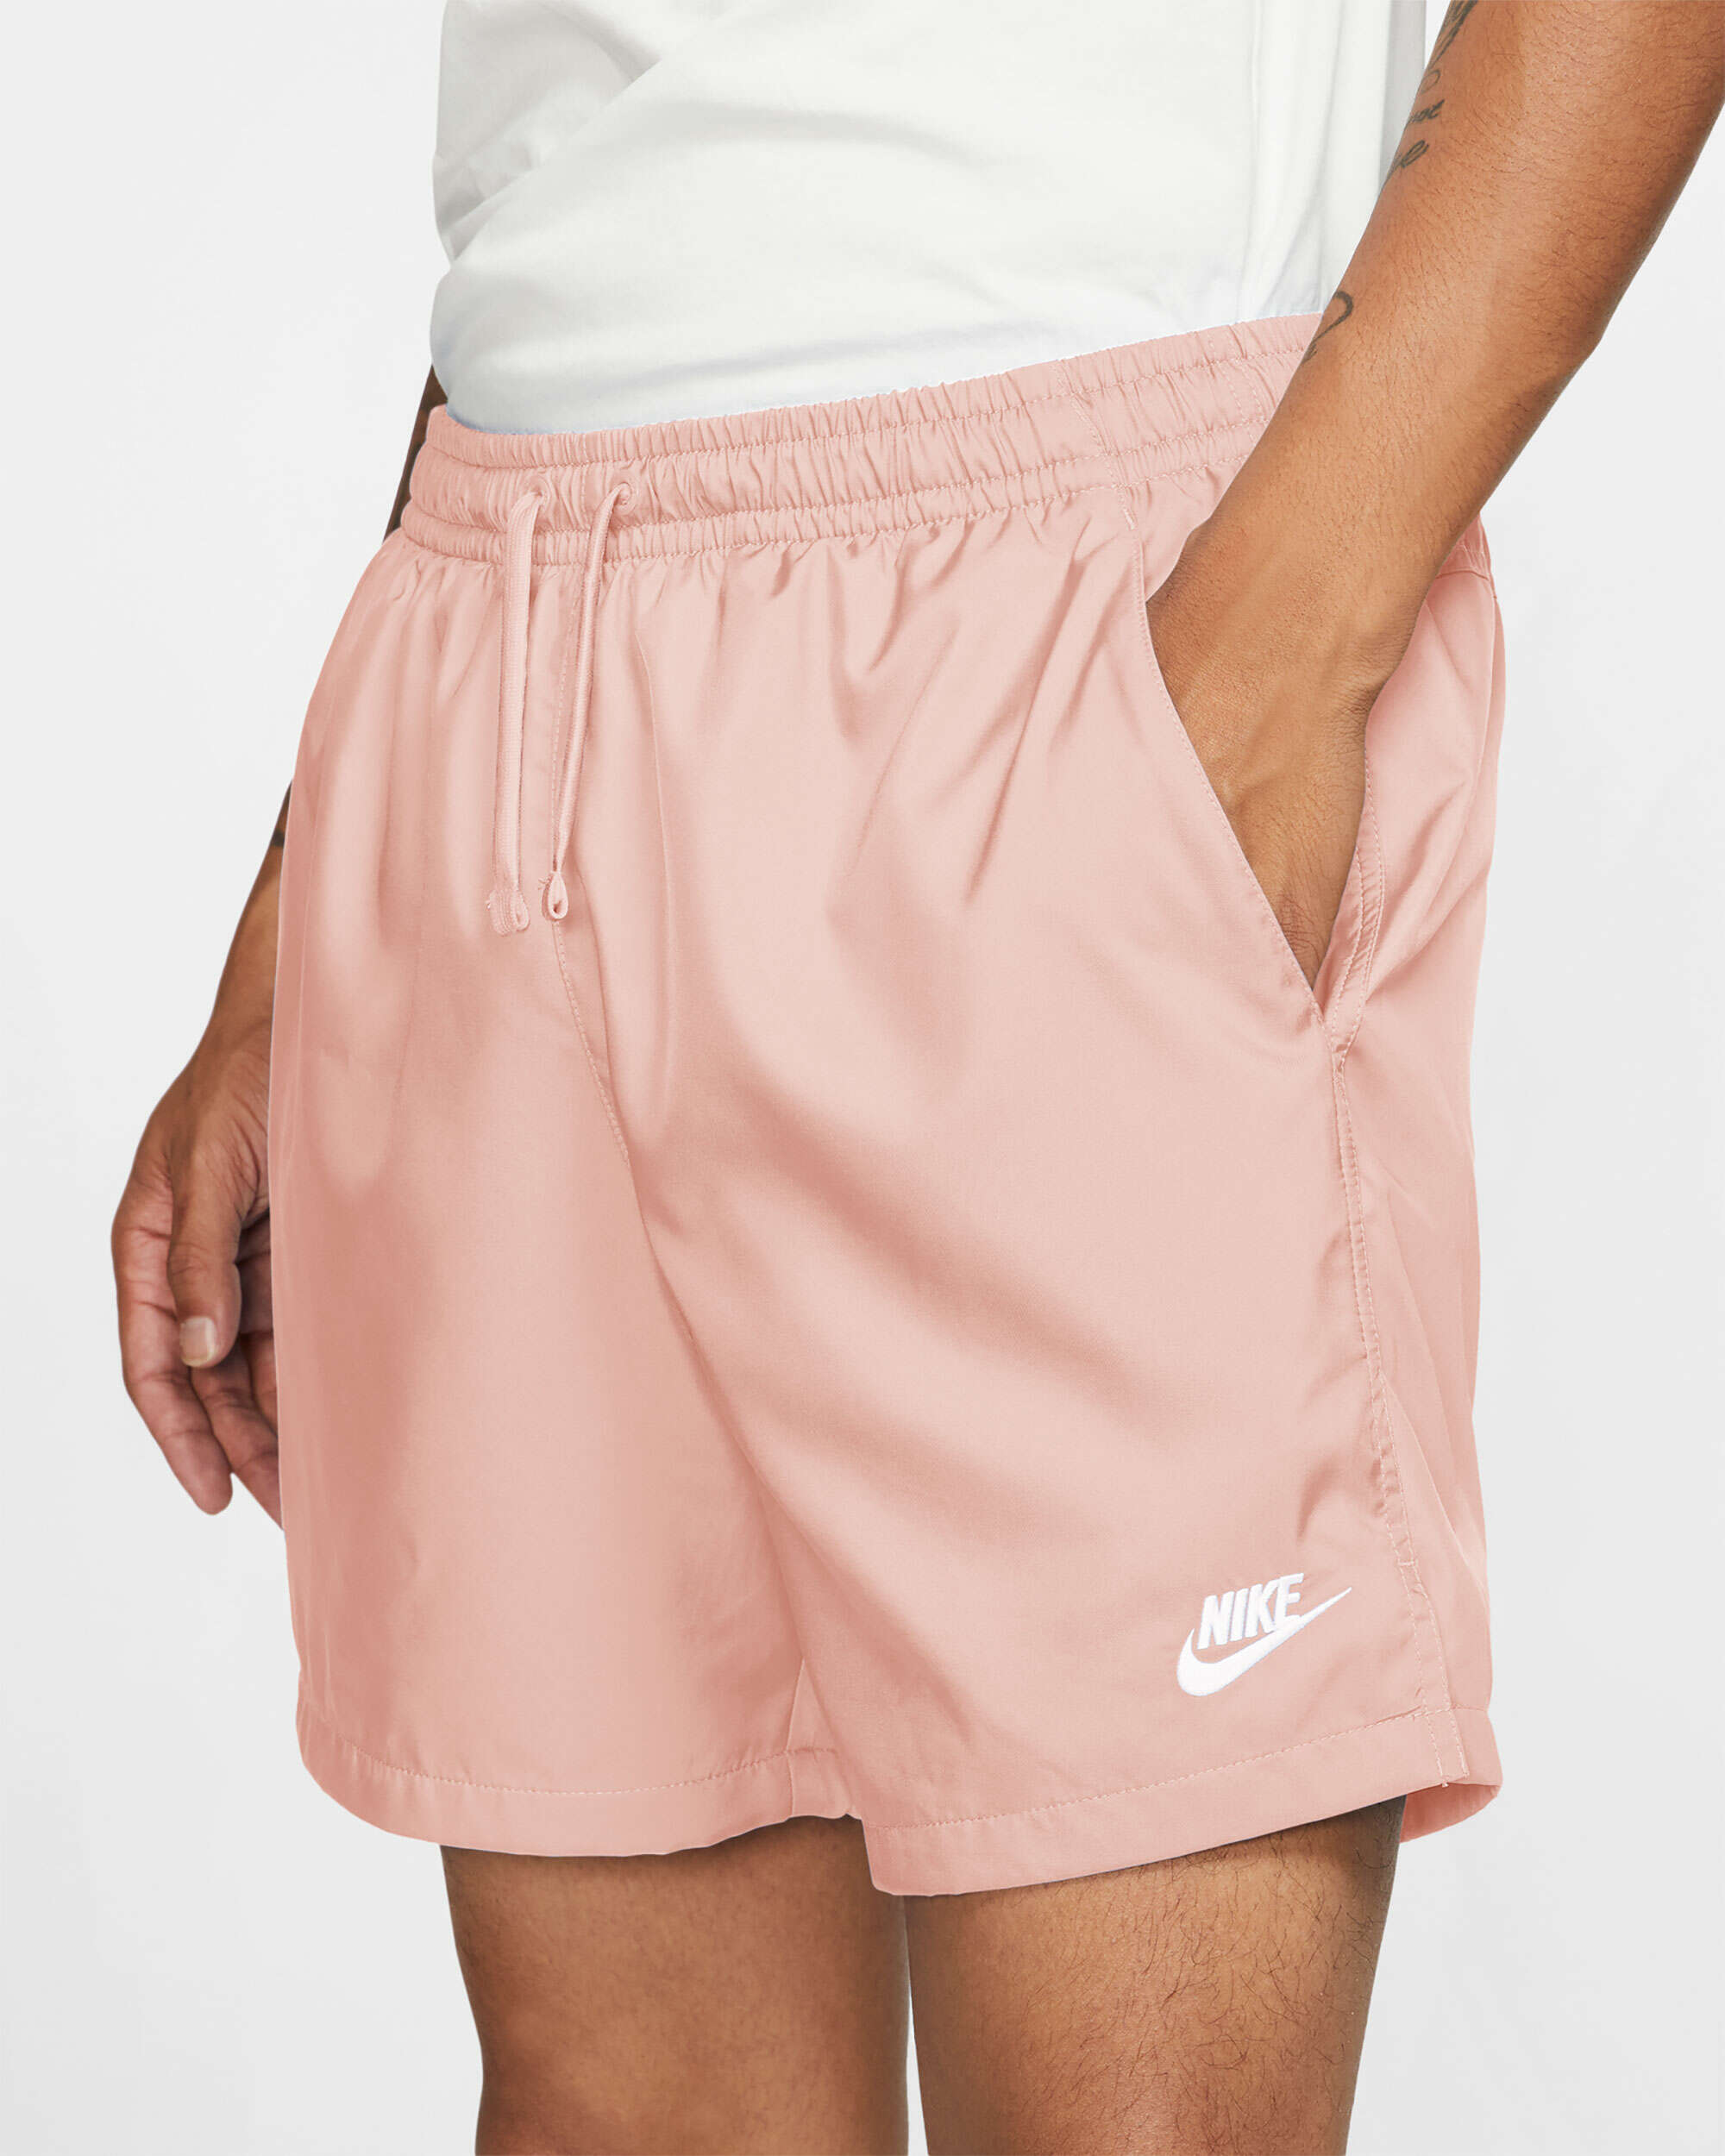 Sportswear Men's Woven Shorts Rosa AR2382-800| Comprar Online en FOOTDISTRICT